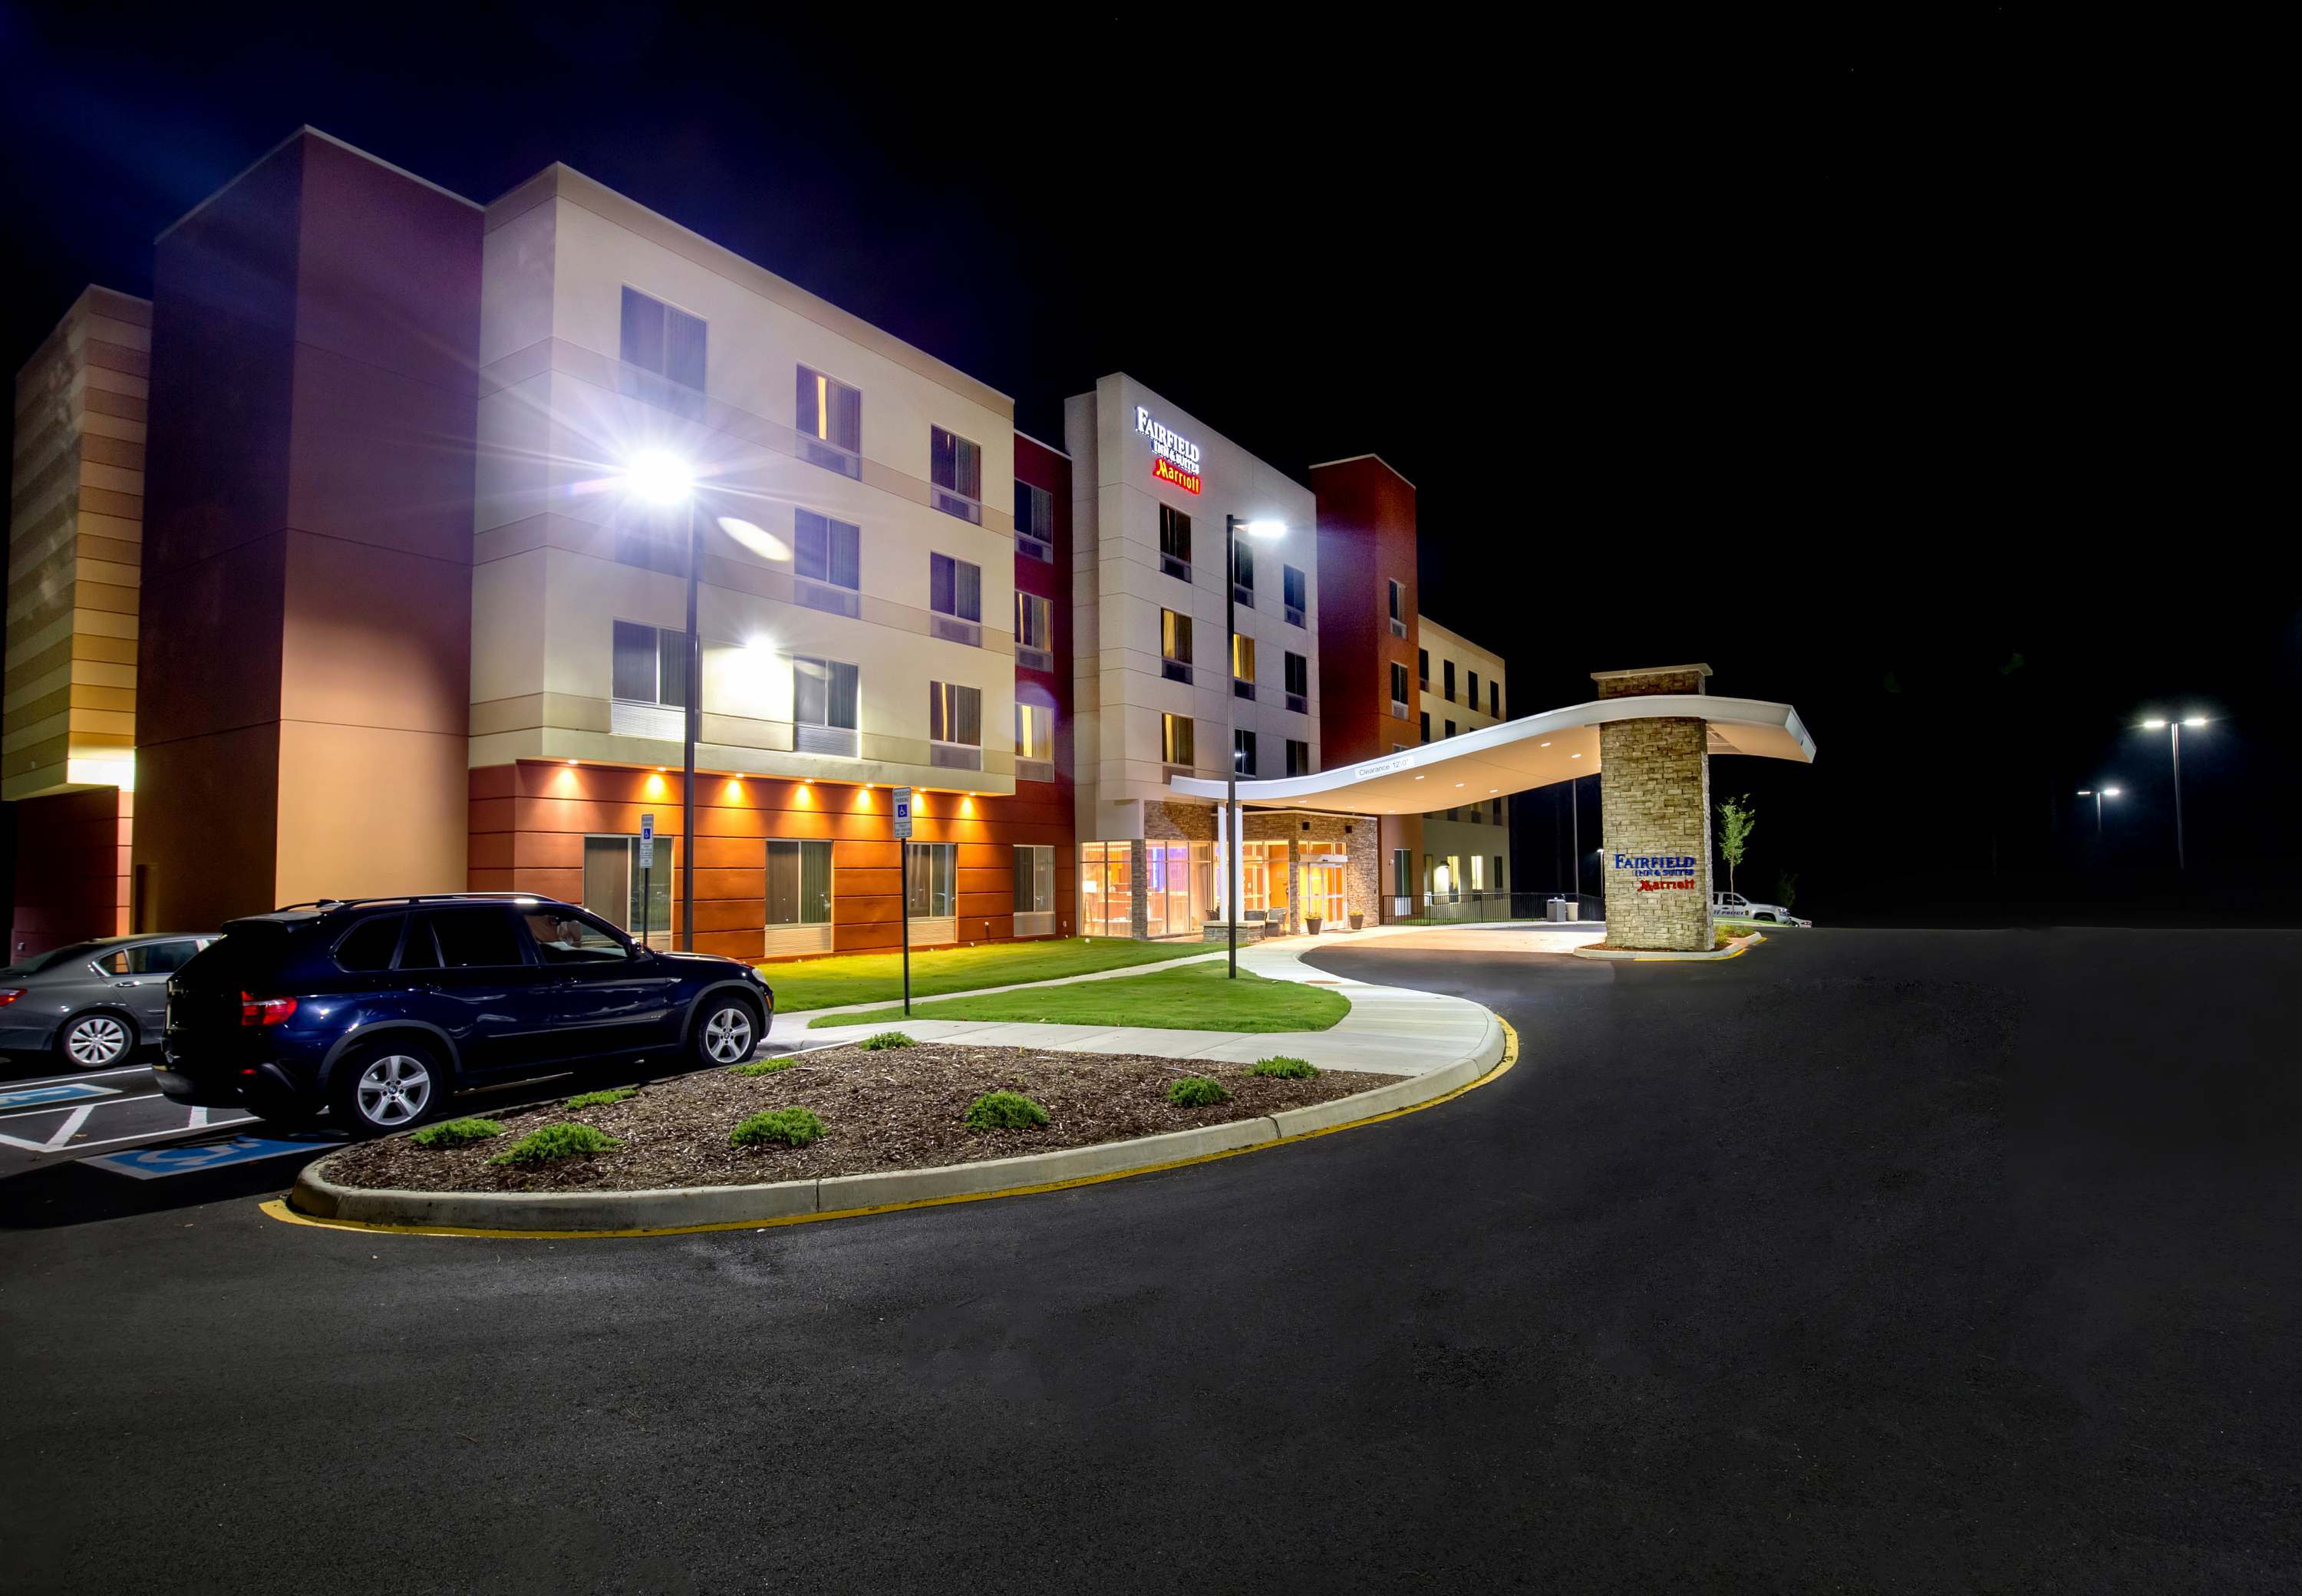 Photo of Fairfield Inn & Suites Richmond Midlothian, Richmond, VA